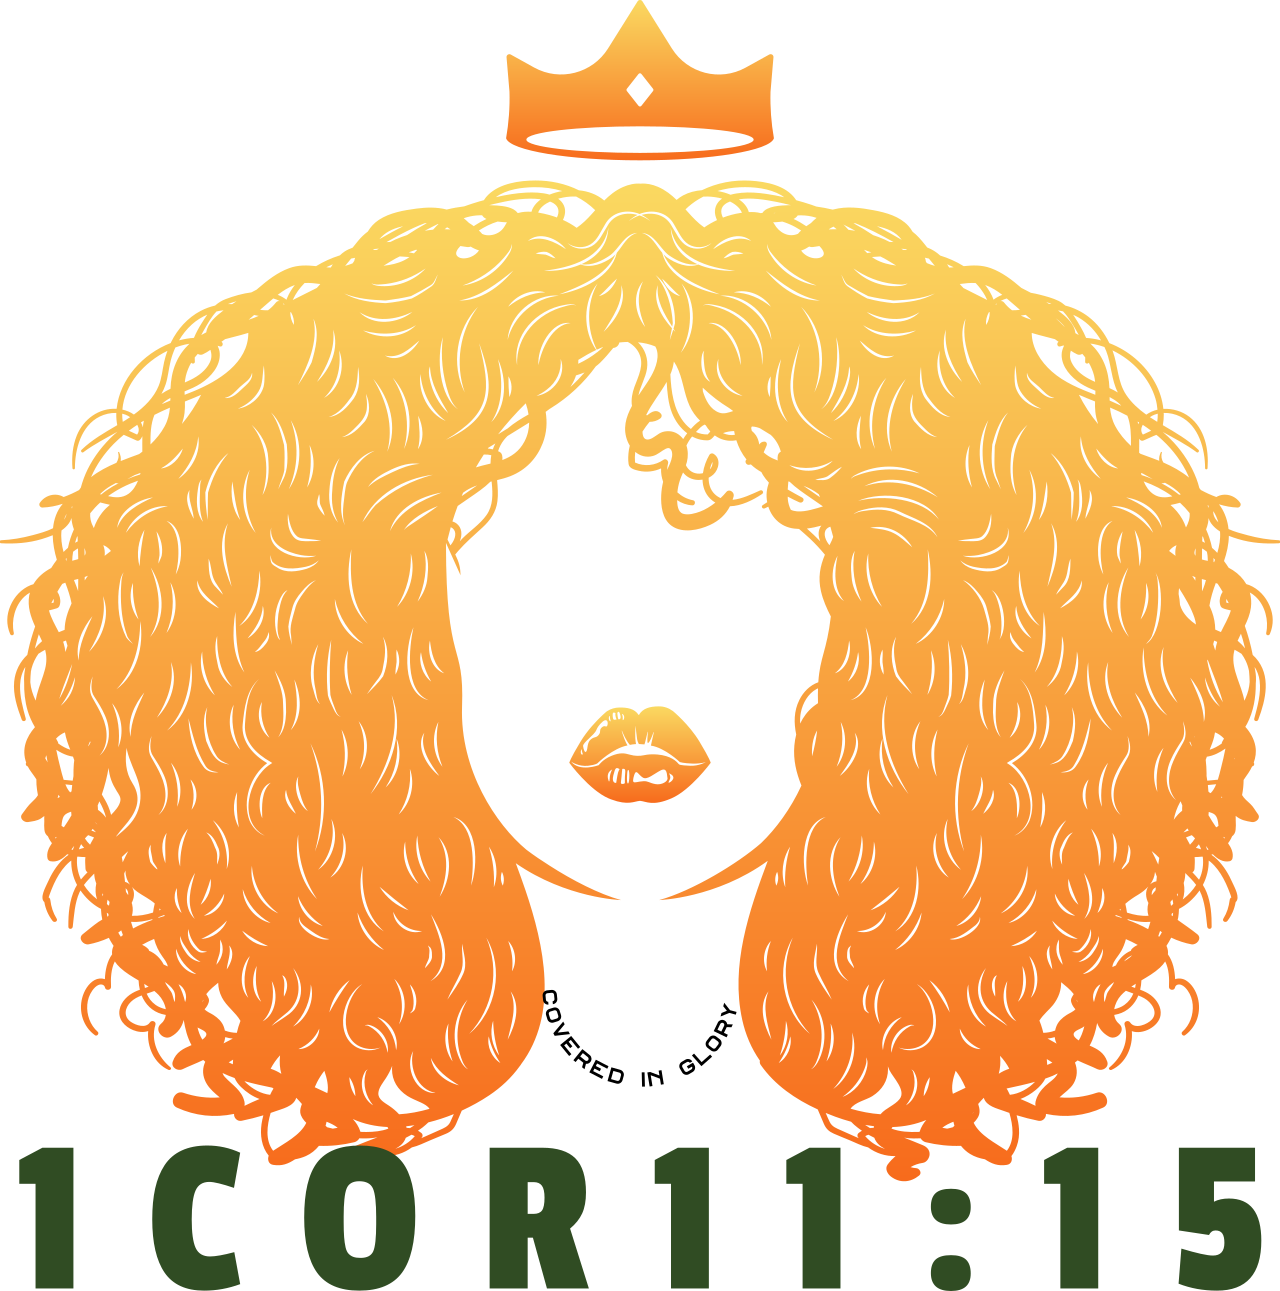 1Cor11:15's logo